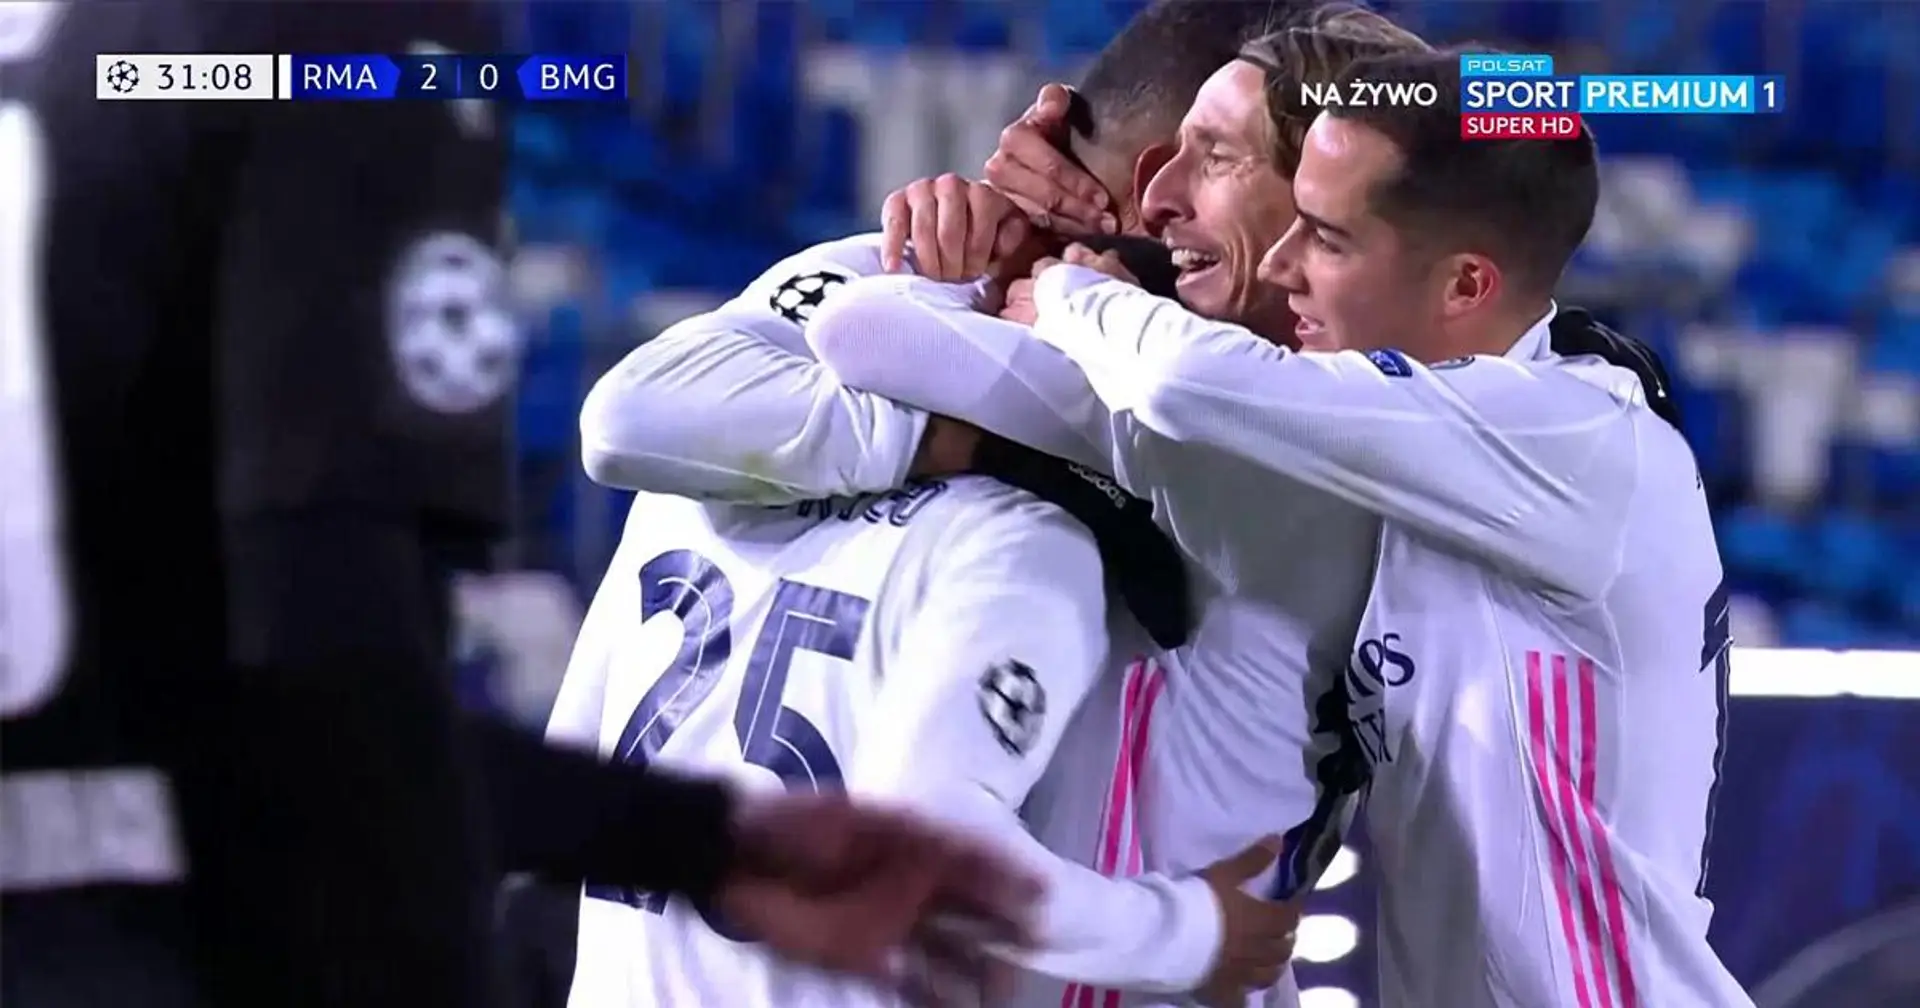 Saludado por todos: los compañeros de equipo corren para felicitar a Rodrygo por su increíble asistencia en el segundo de Benzema vs Gladbach 